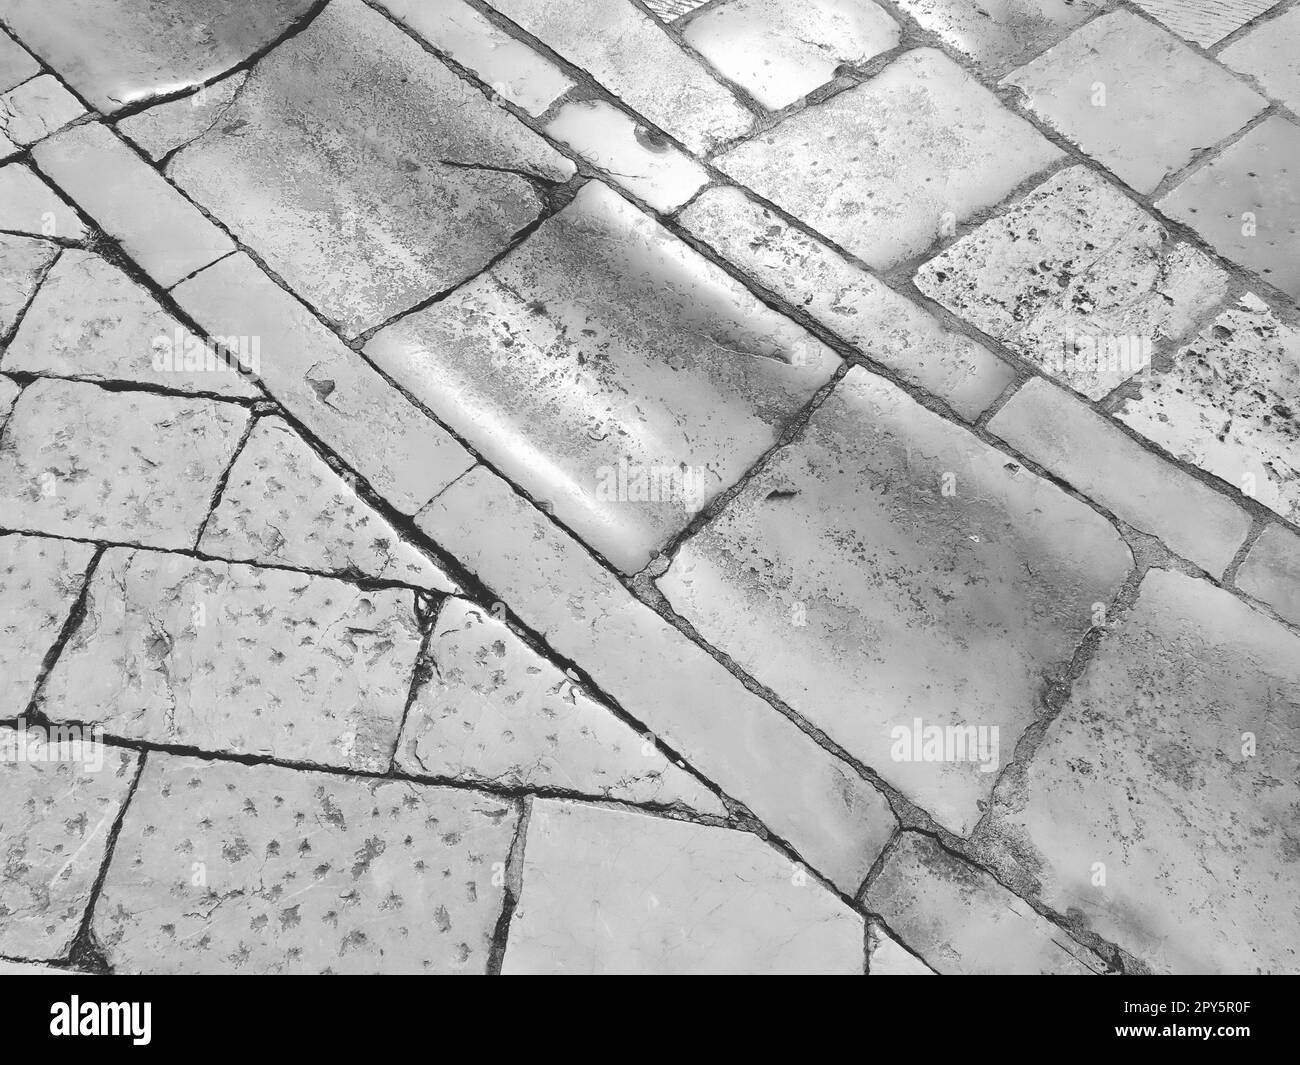 Sol en marbre dans la rue, Dubrovnik, Croatie. Carreaux de maçonnerie anciens blocs rectangulaires. Roche métamorphique composée de calcite CaCO3. Drainage, charbon pour l'eau. Noir et blanc monochrome Banque D'Images